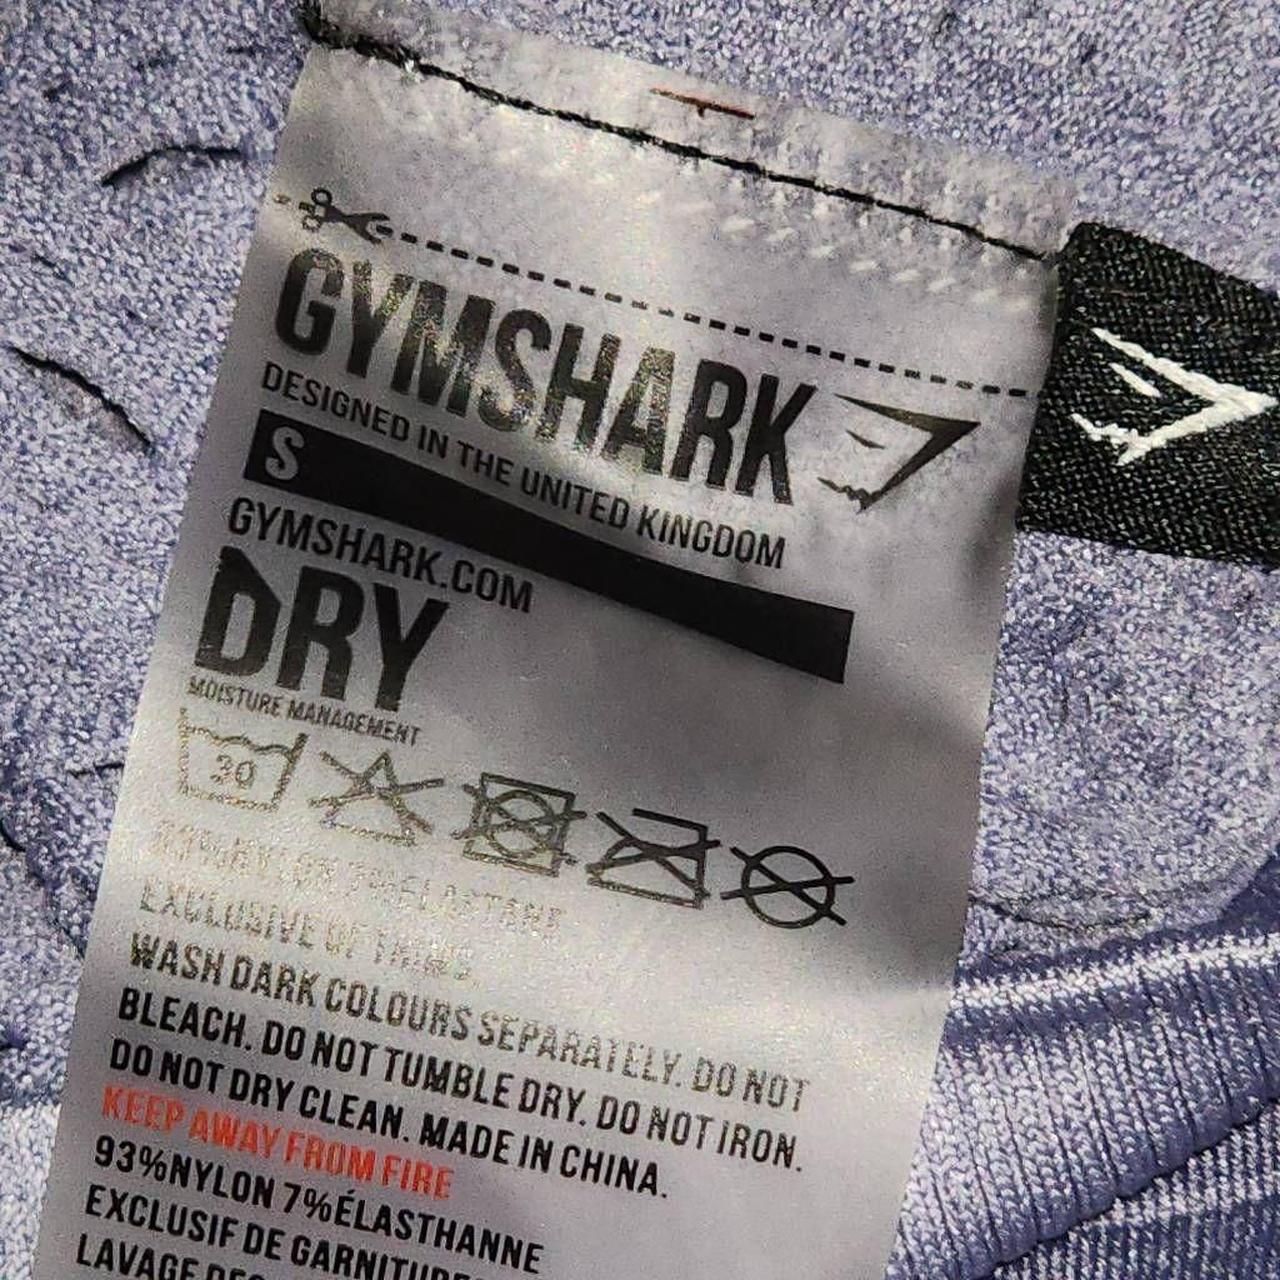 Gymshark Dry Moisture Management Seamless Leggings - Depop